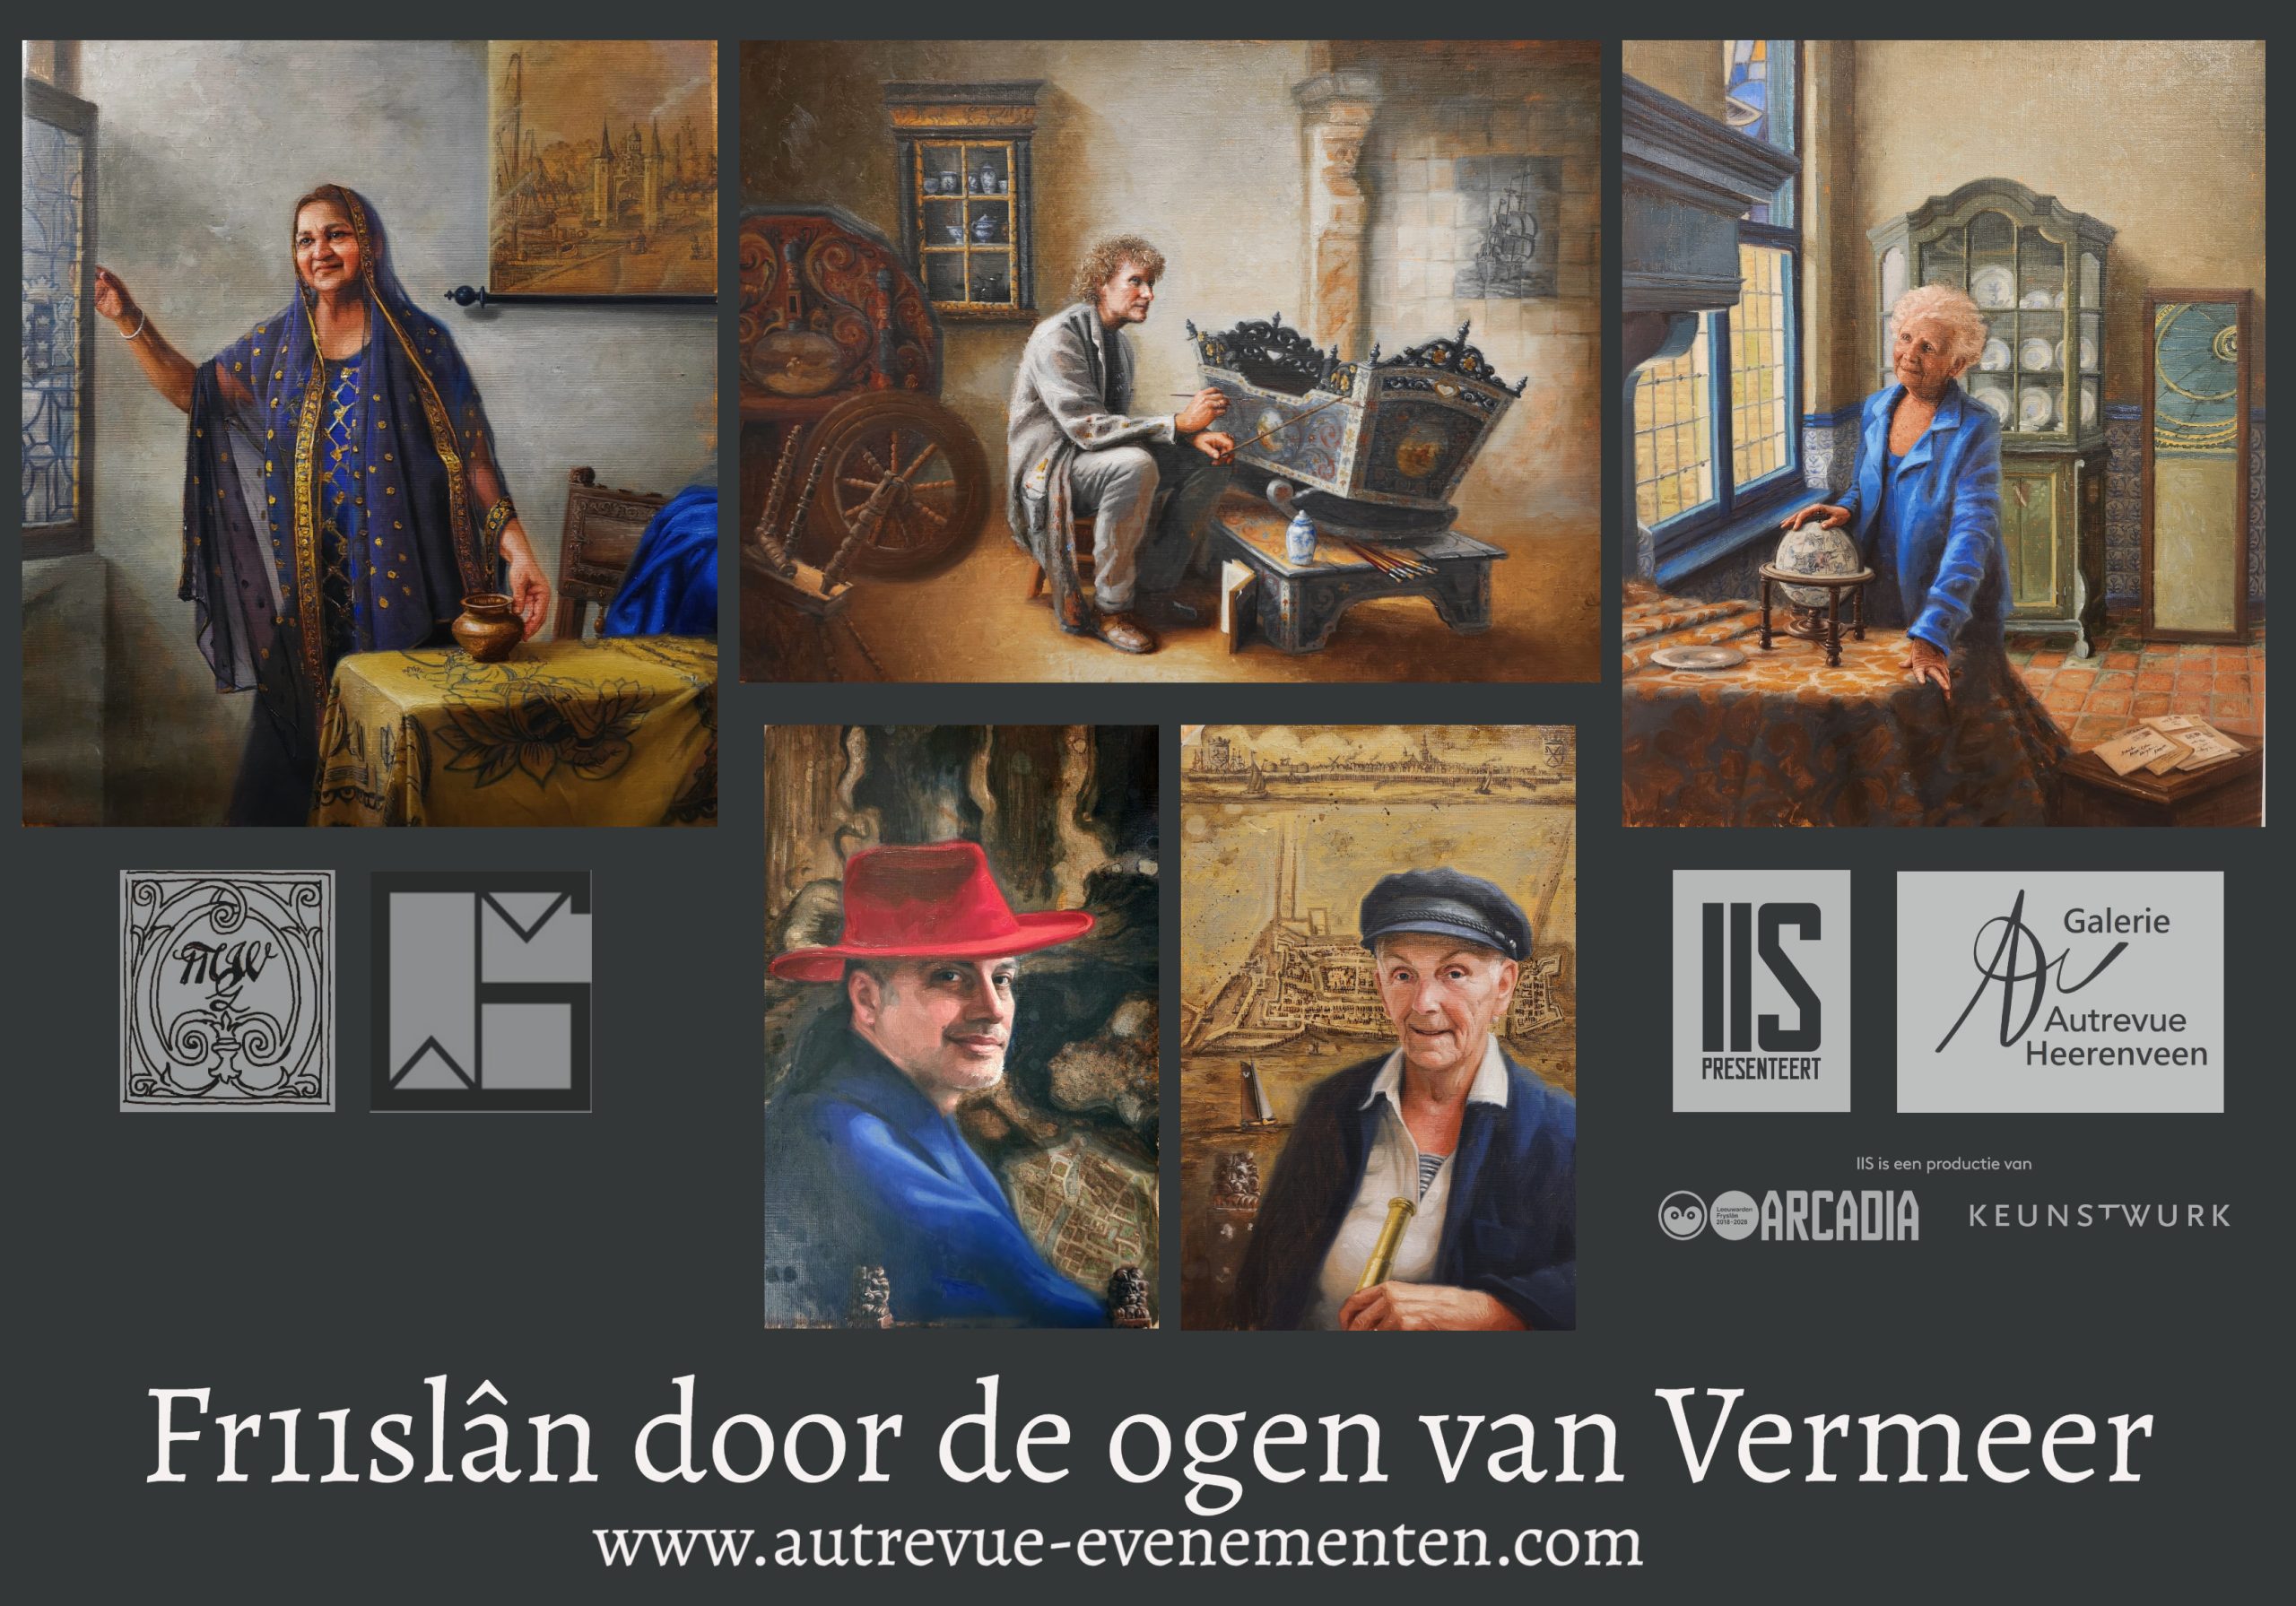 Vermeerproject Info